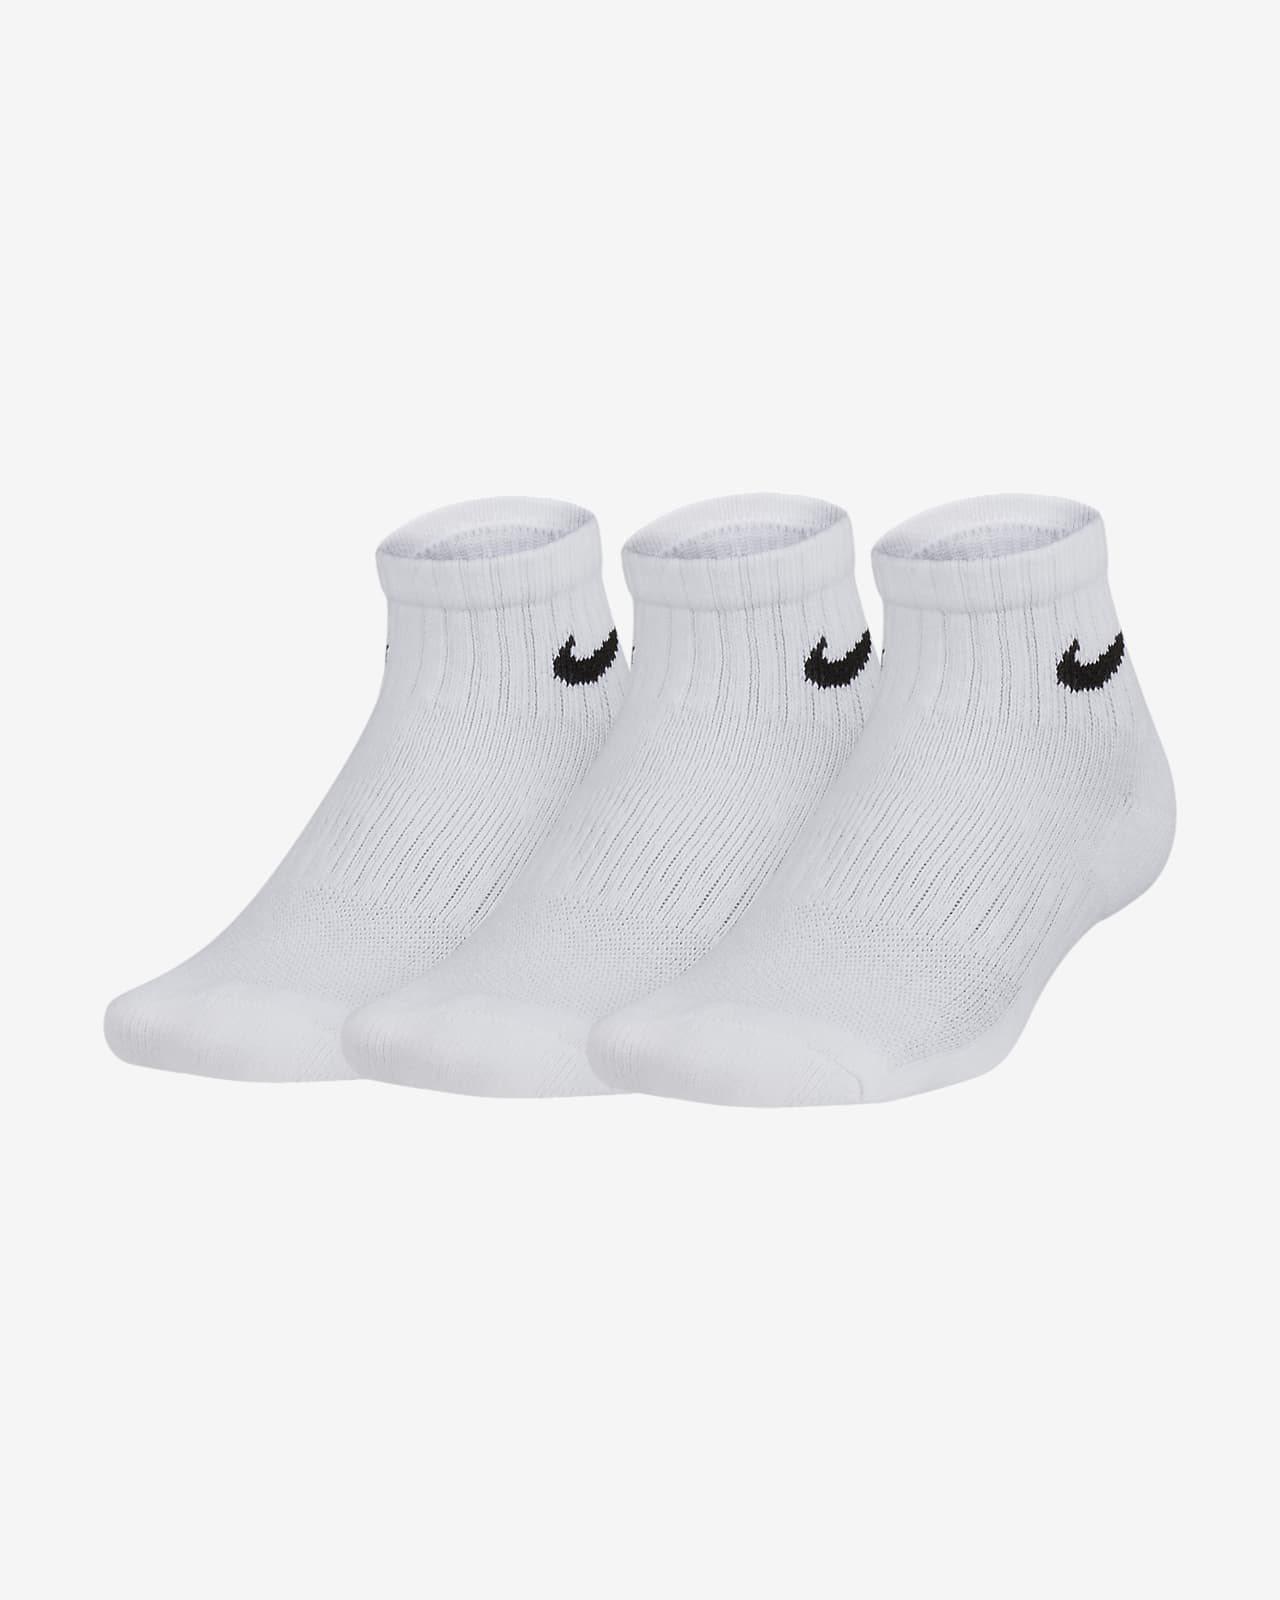 Nike Everyday Calcetines hasta el tobillo acolchados (3 pares) - Niño/a